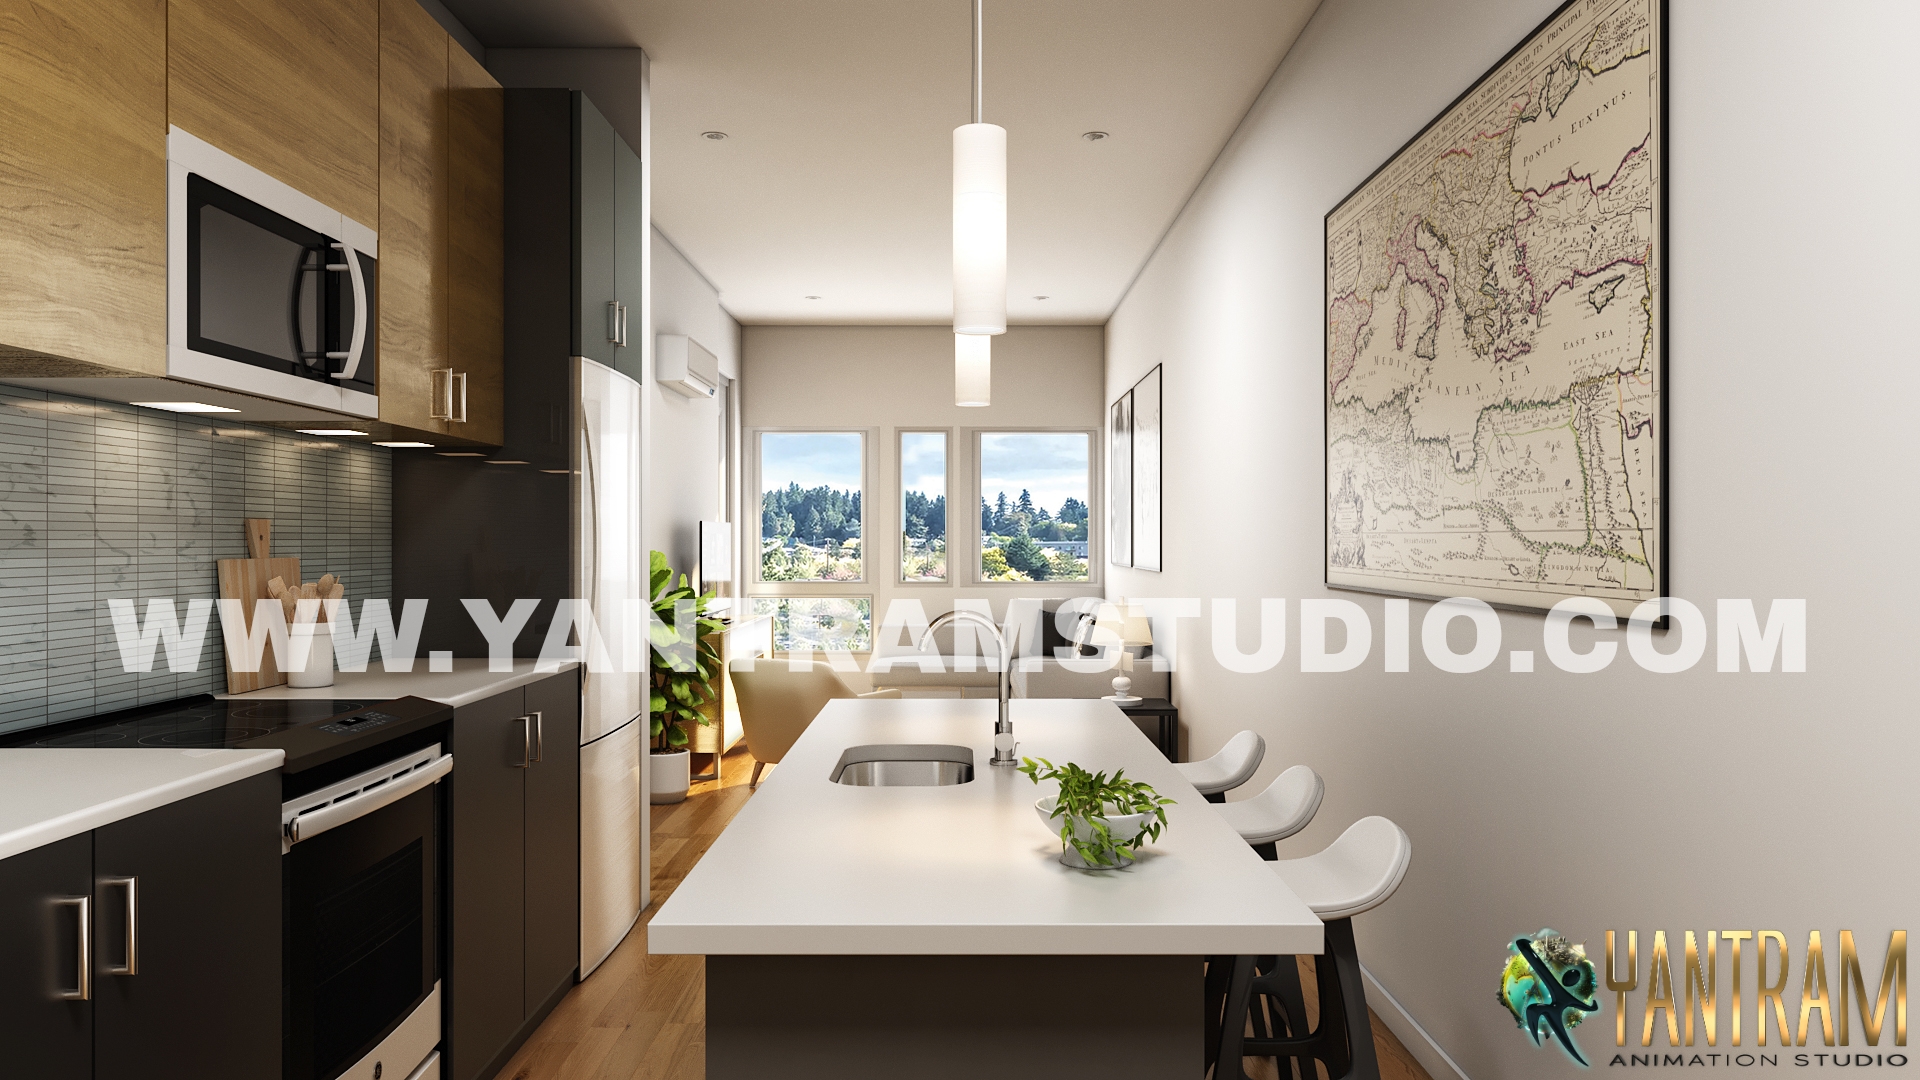 PicsArt-3d-interior-design-studio